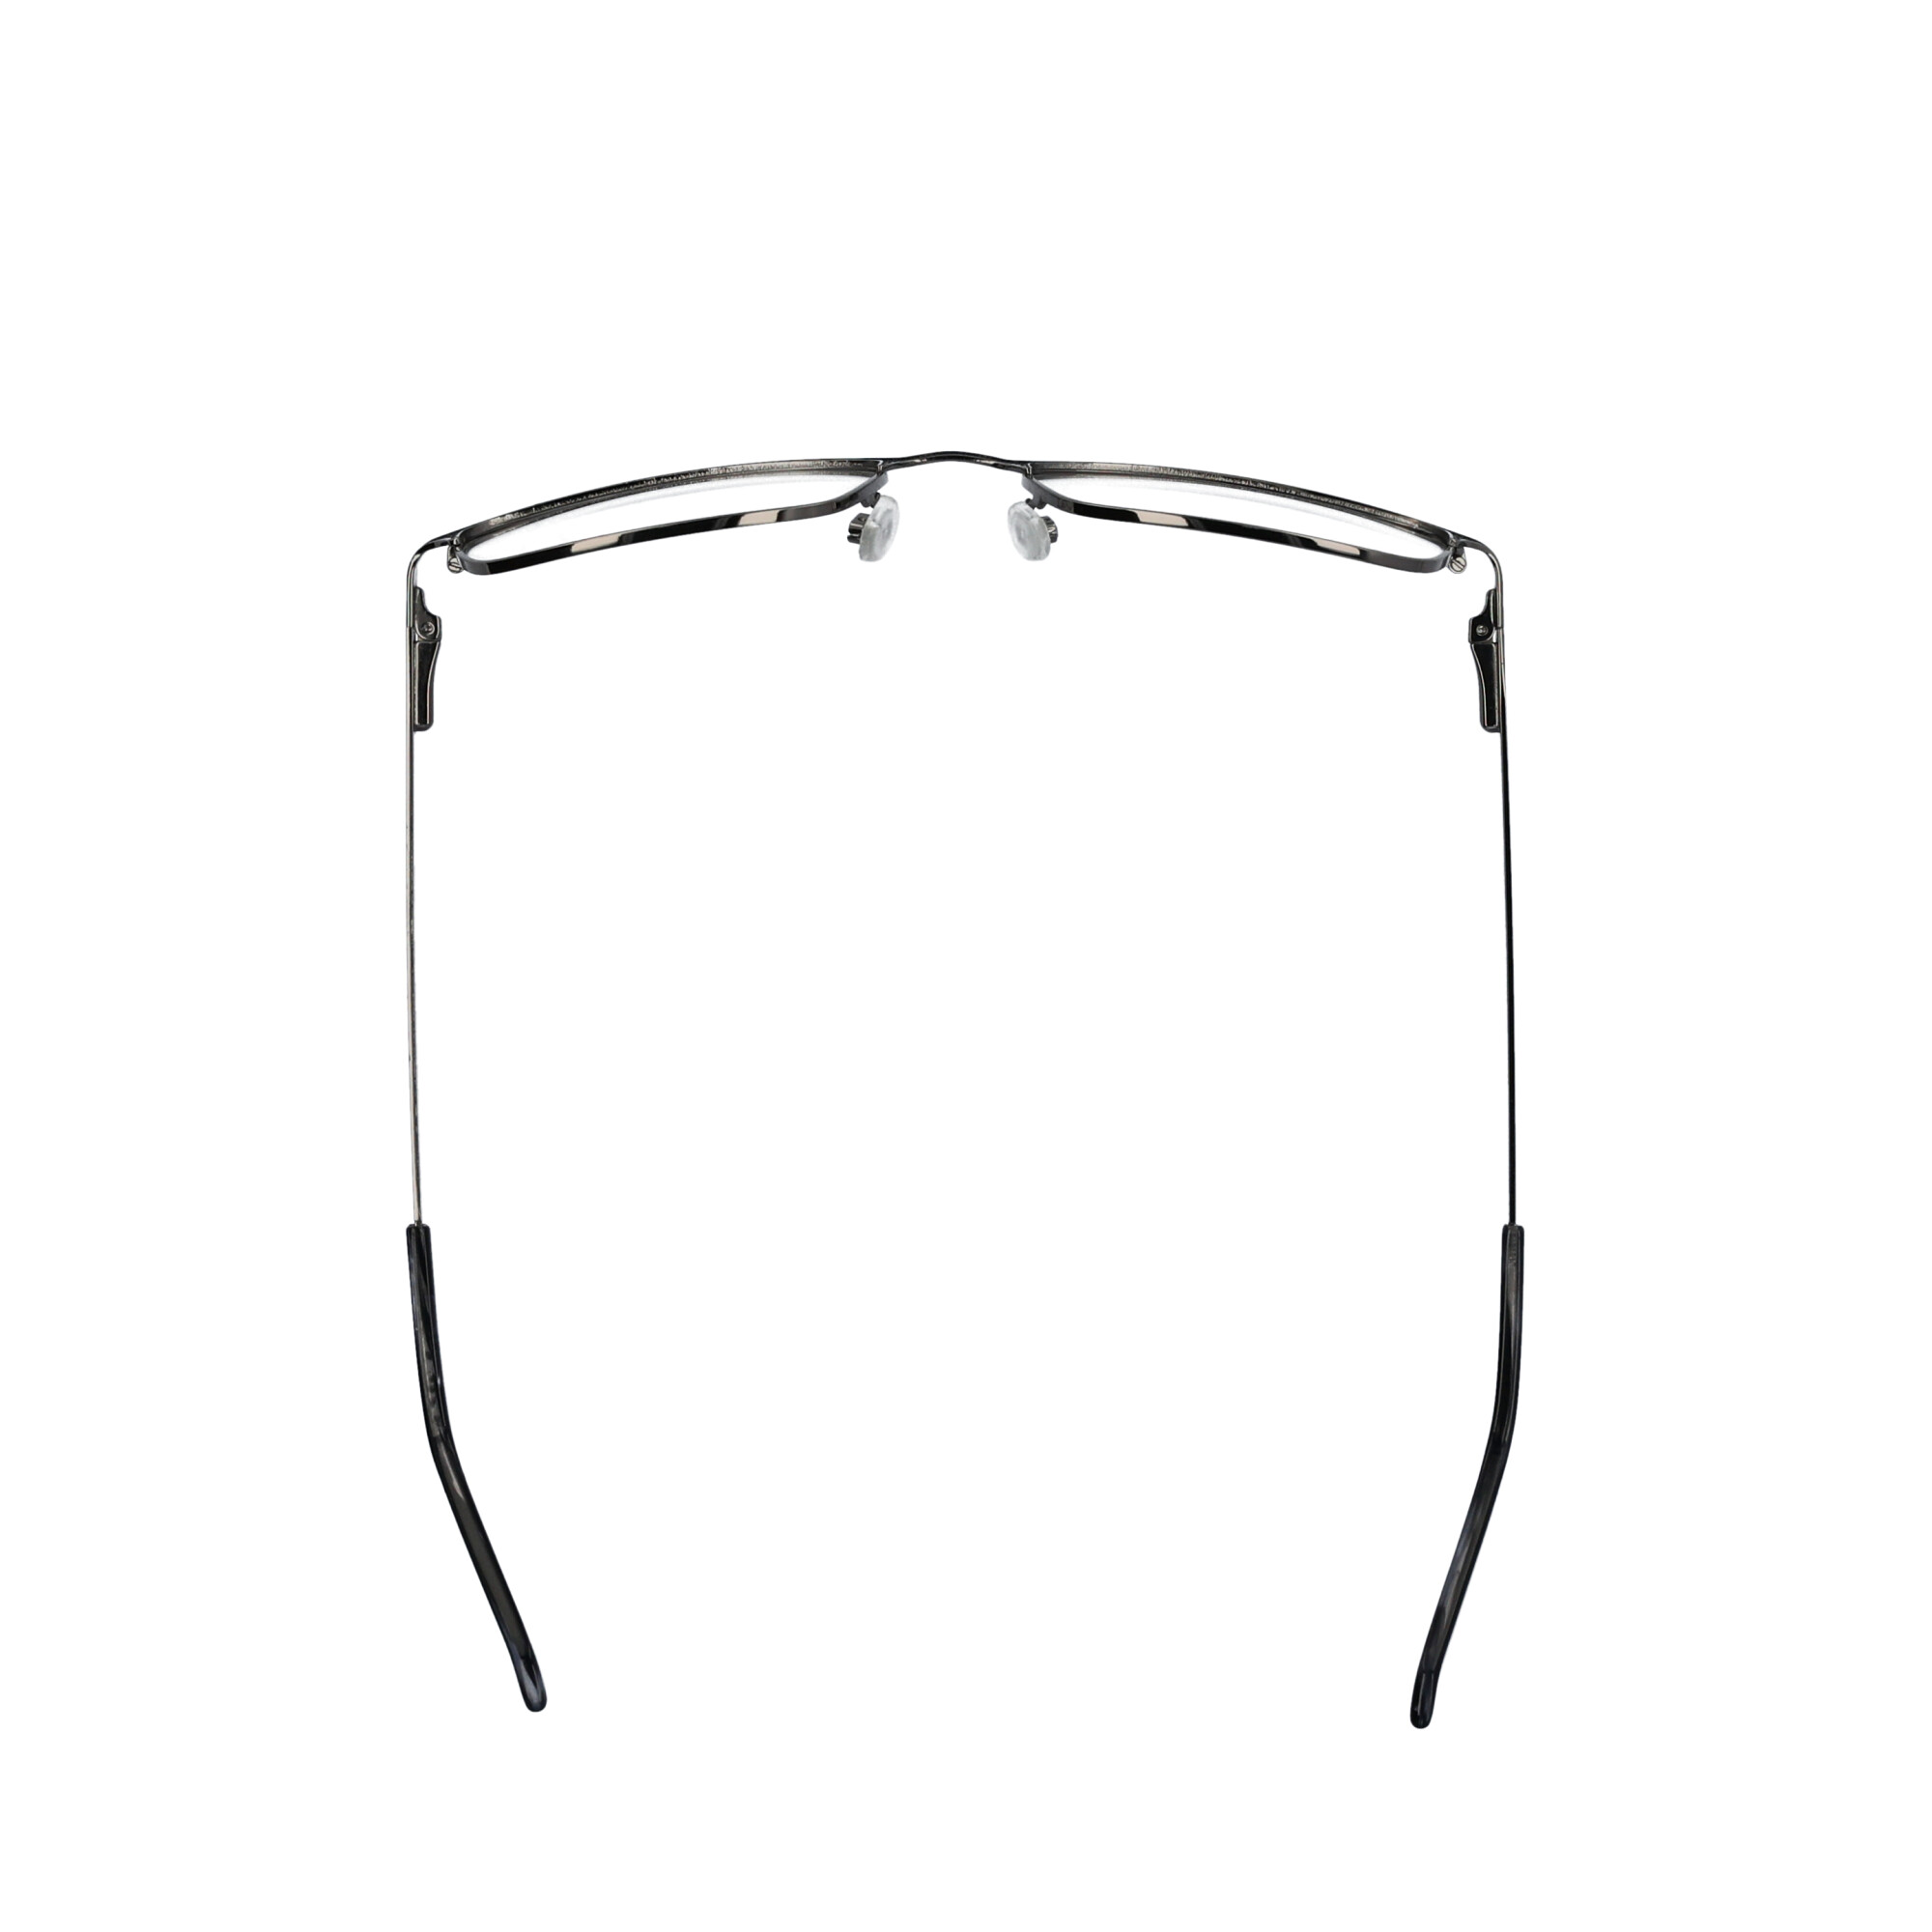 Walmart Men's Rx'able Eyeglasses, Mop41, Dark Grey, 54-18-145 - image 4 of 13